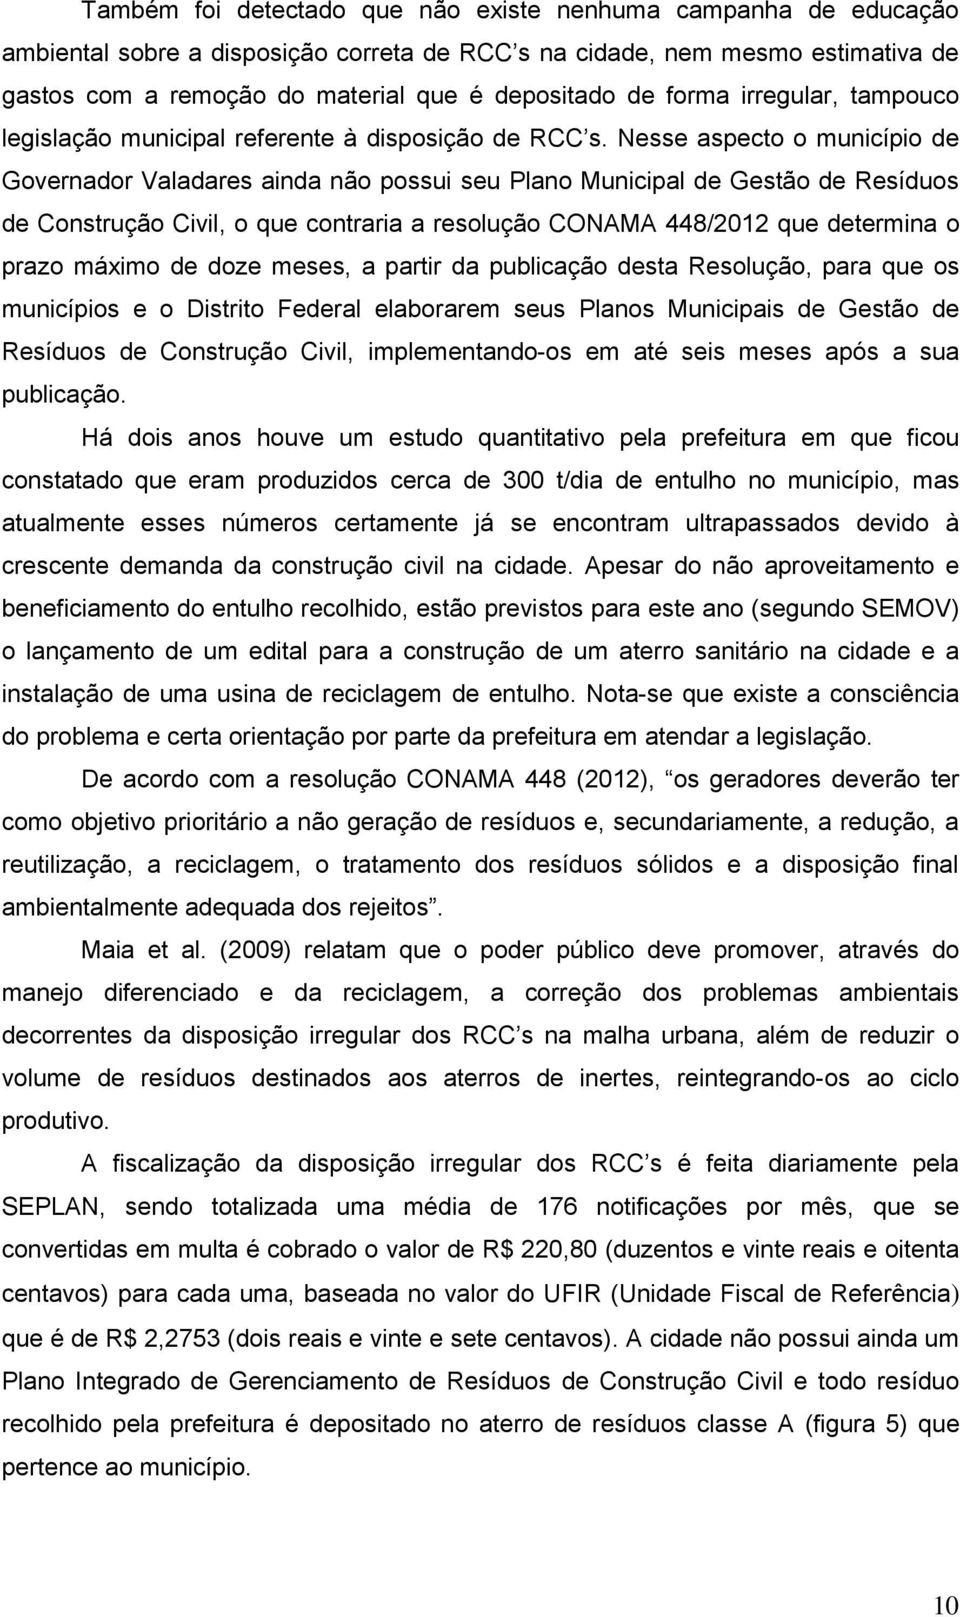 Nesse aspecto o município de Governador Valadares ainda não possui seu Plano Municipal de Gestão de Resíduos de Construção Civil, o que contraria a resolução CONAMA 448/2012 que determina o prazo